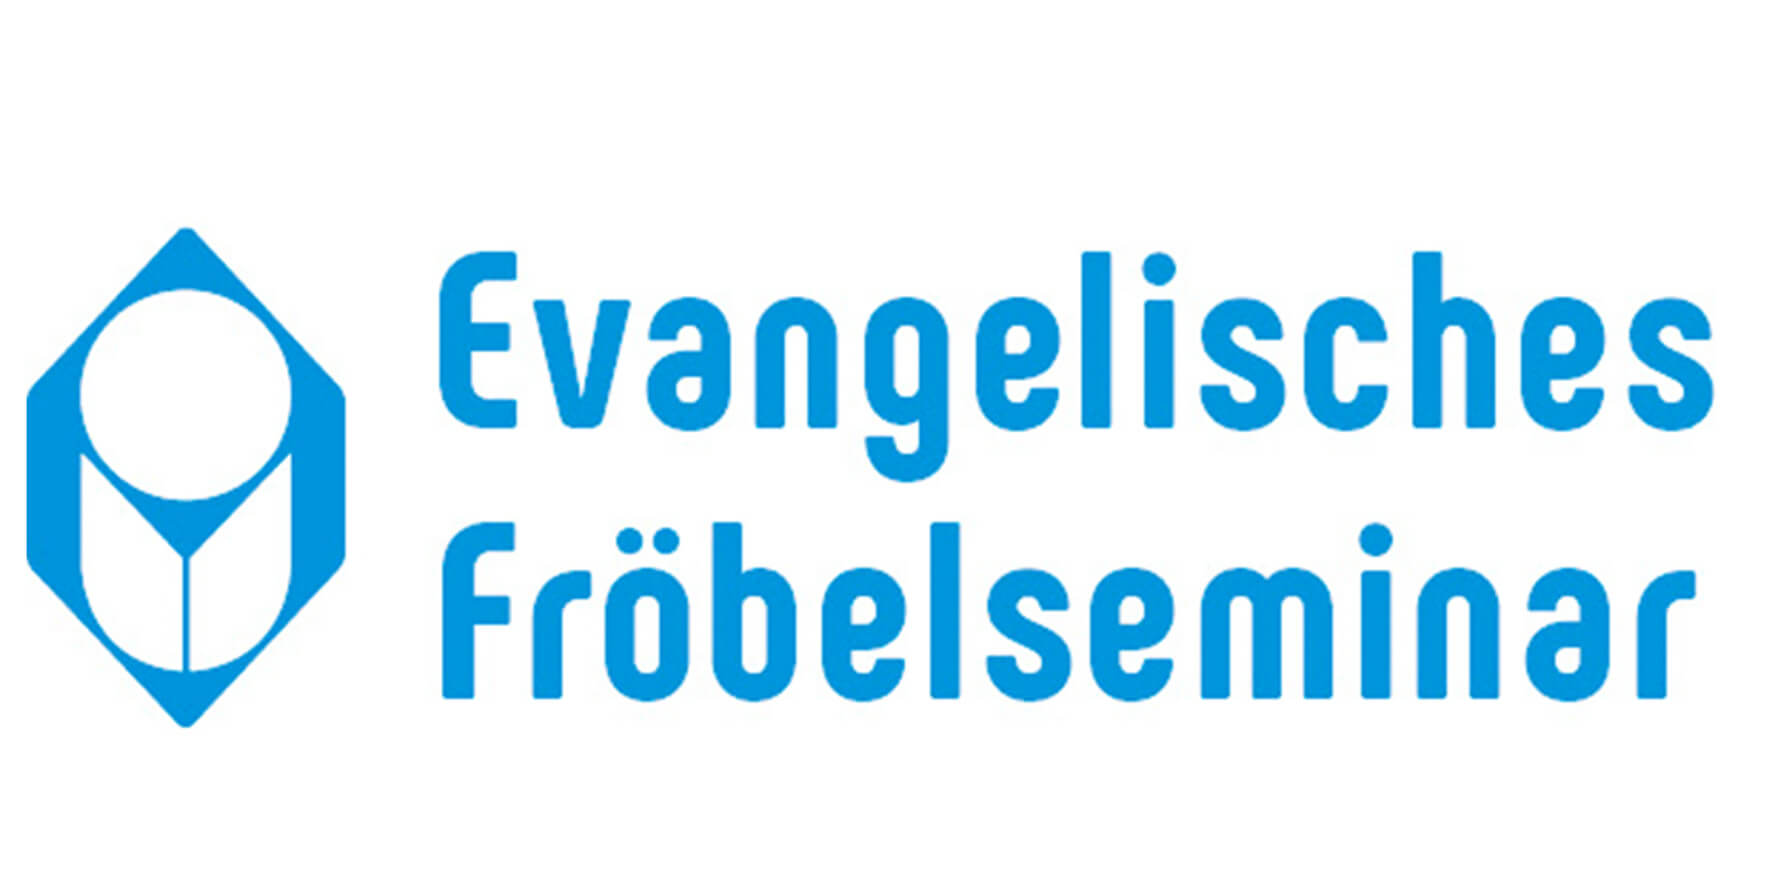 Evangelisches Fröbelseminar